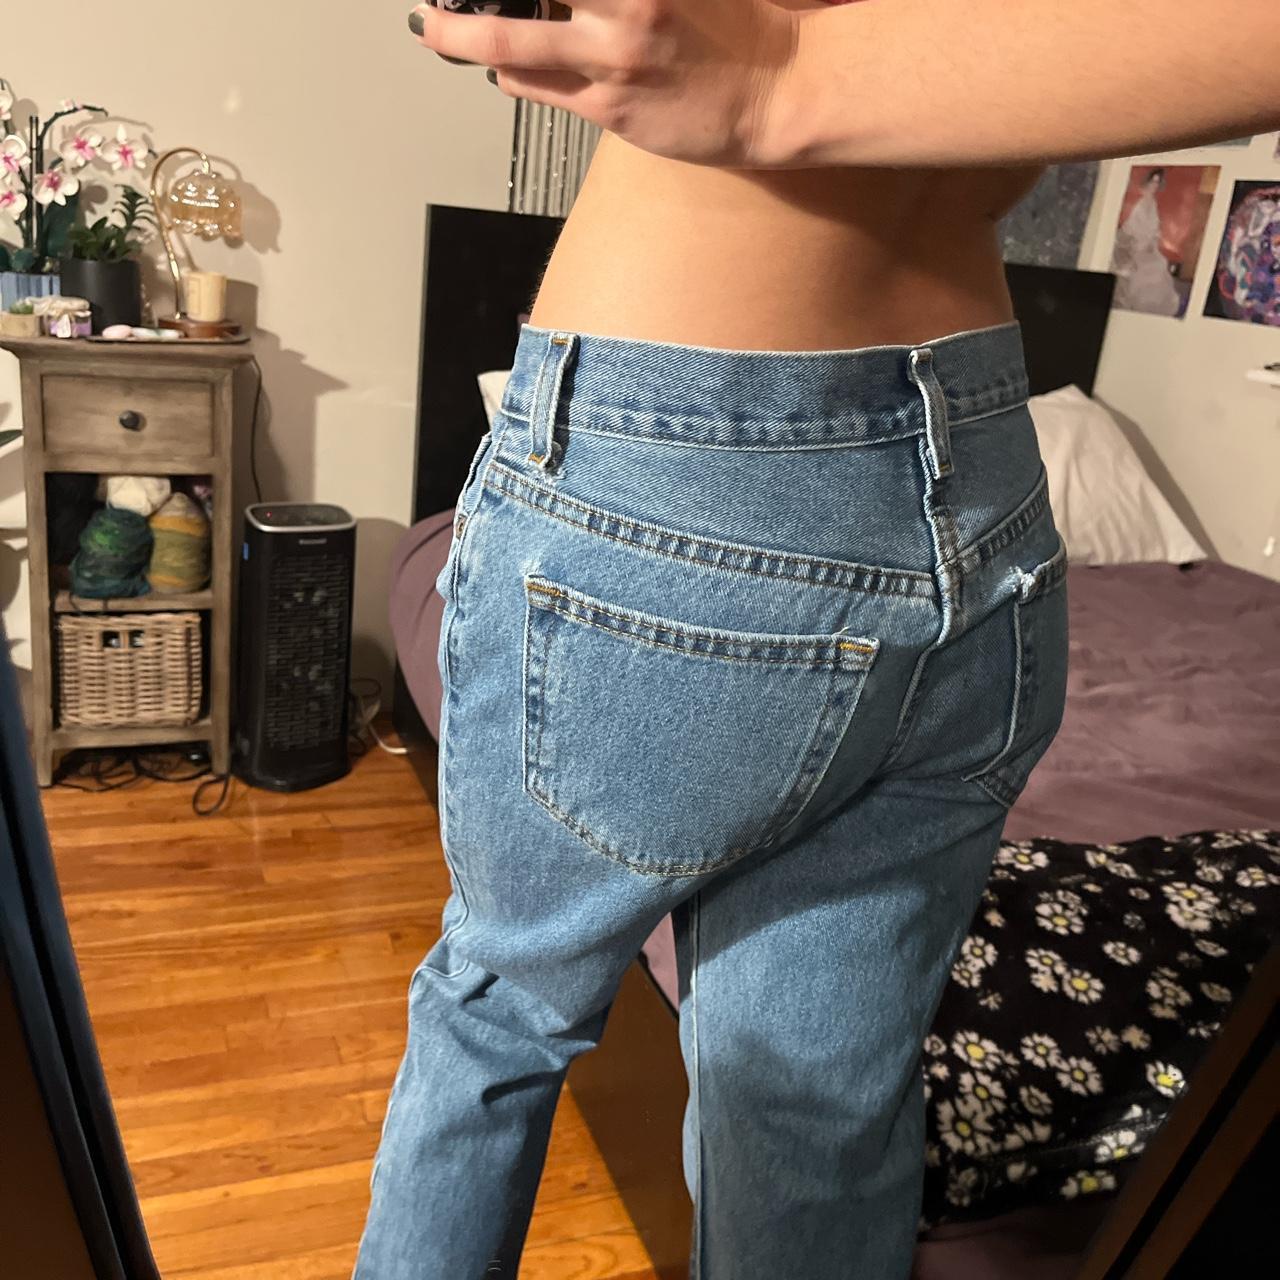 vintage baggy mens jeans size 29*30 waist like 34 cm - Depop